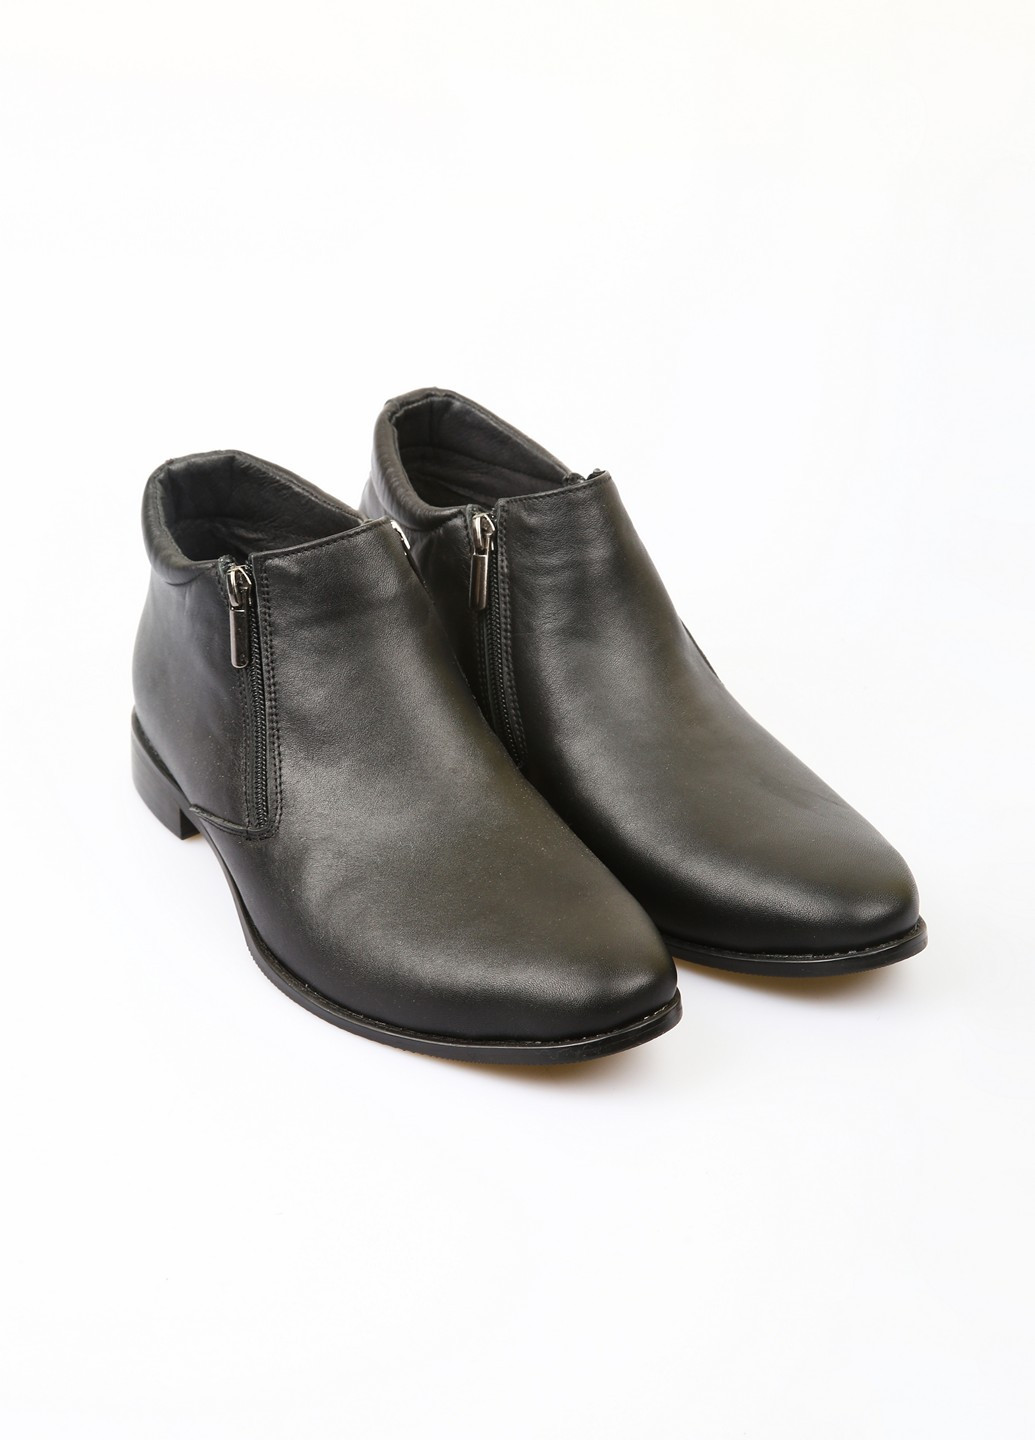 Черные зимние ботинки Mitro